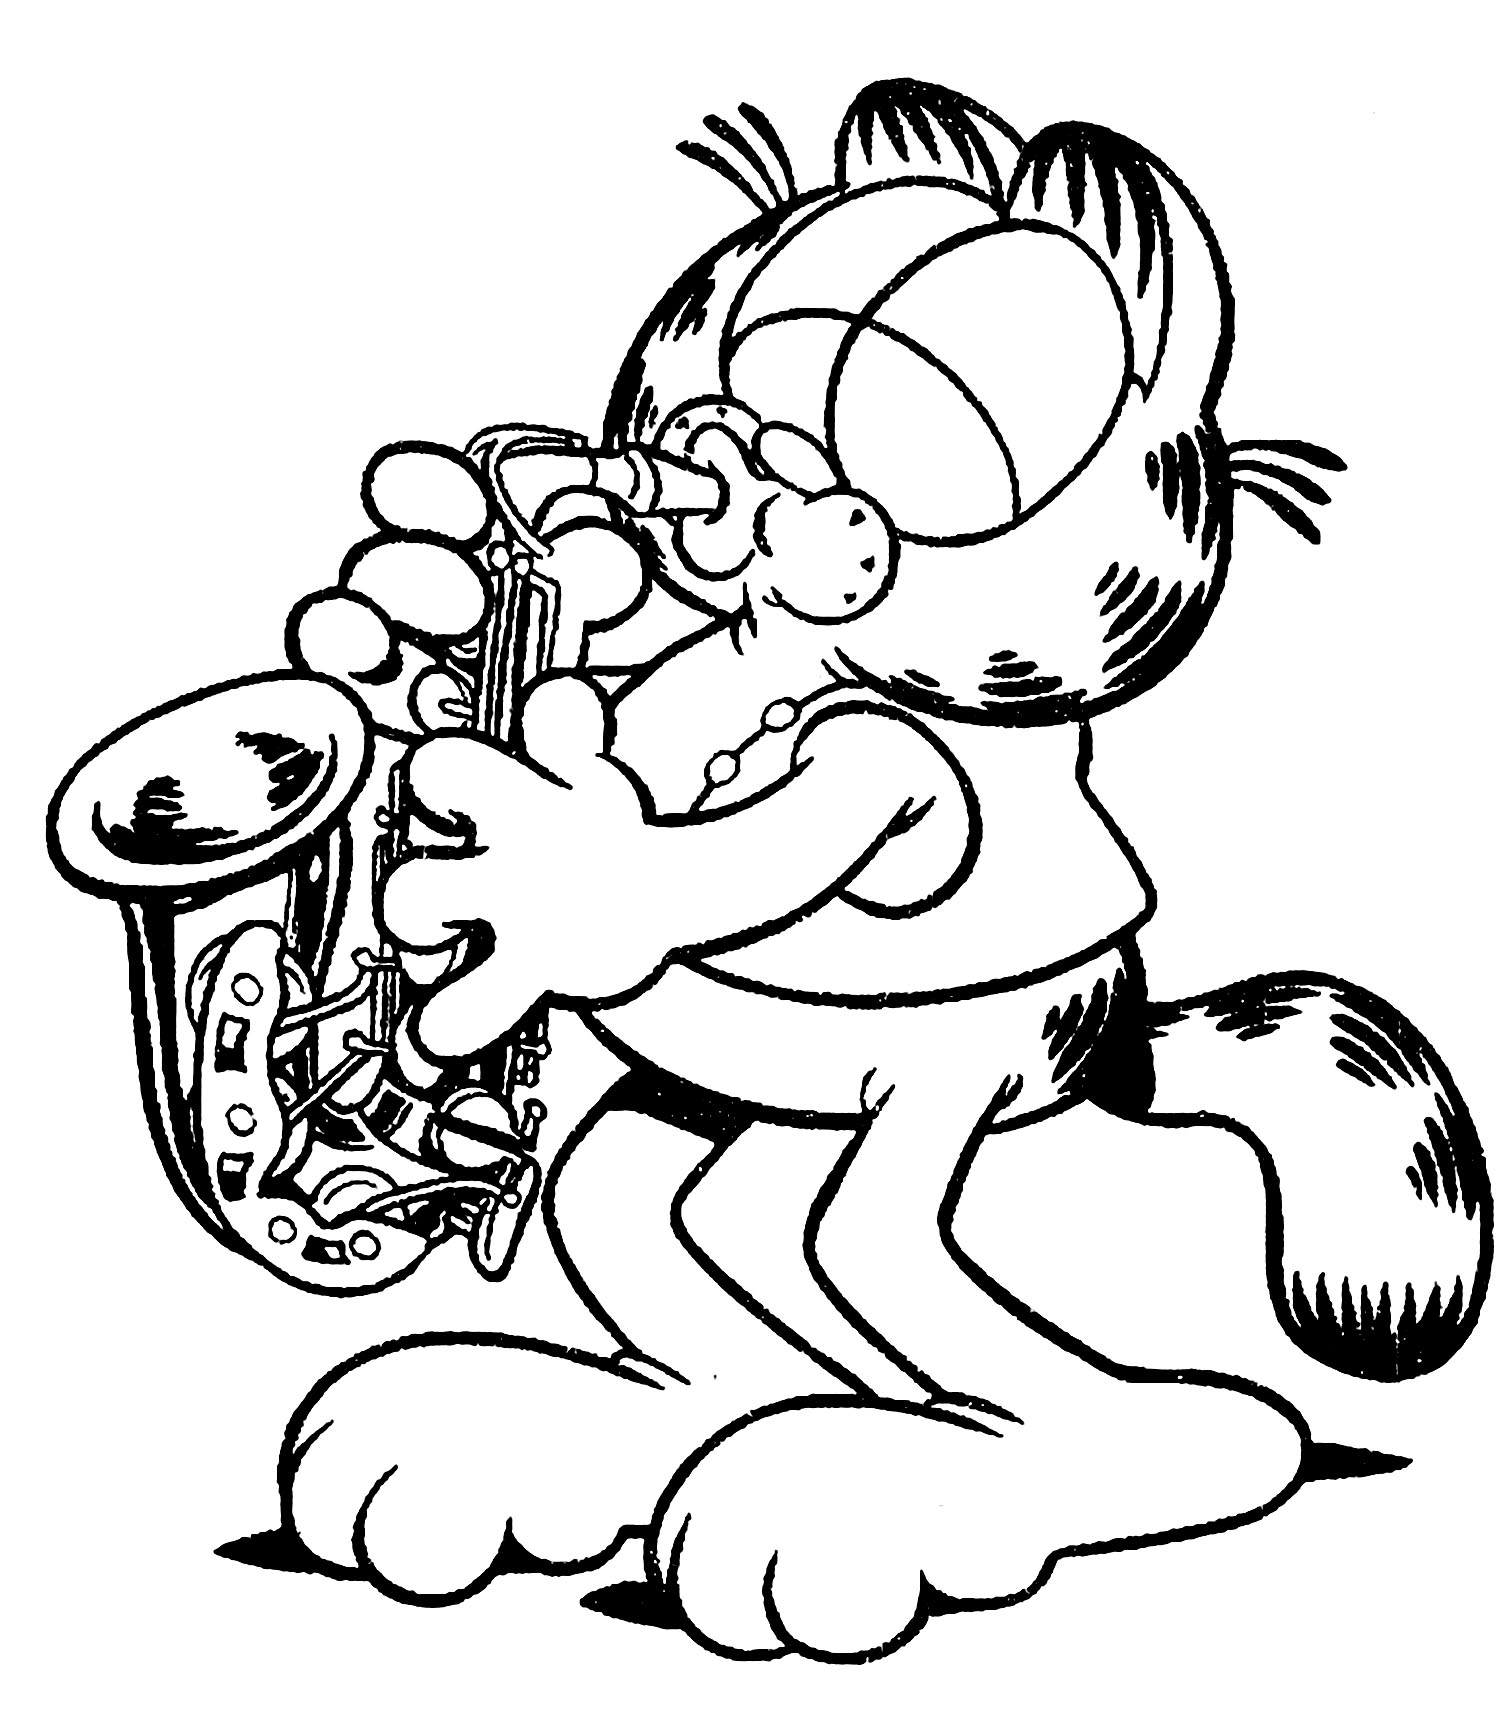 Préparez vos crayons et feutres pour colorier ce coloriage de Garfield